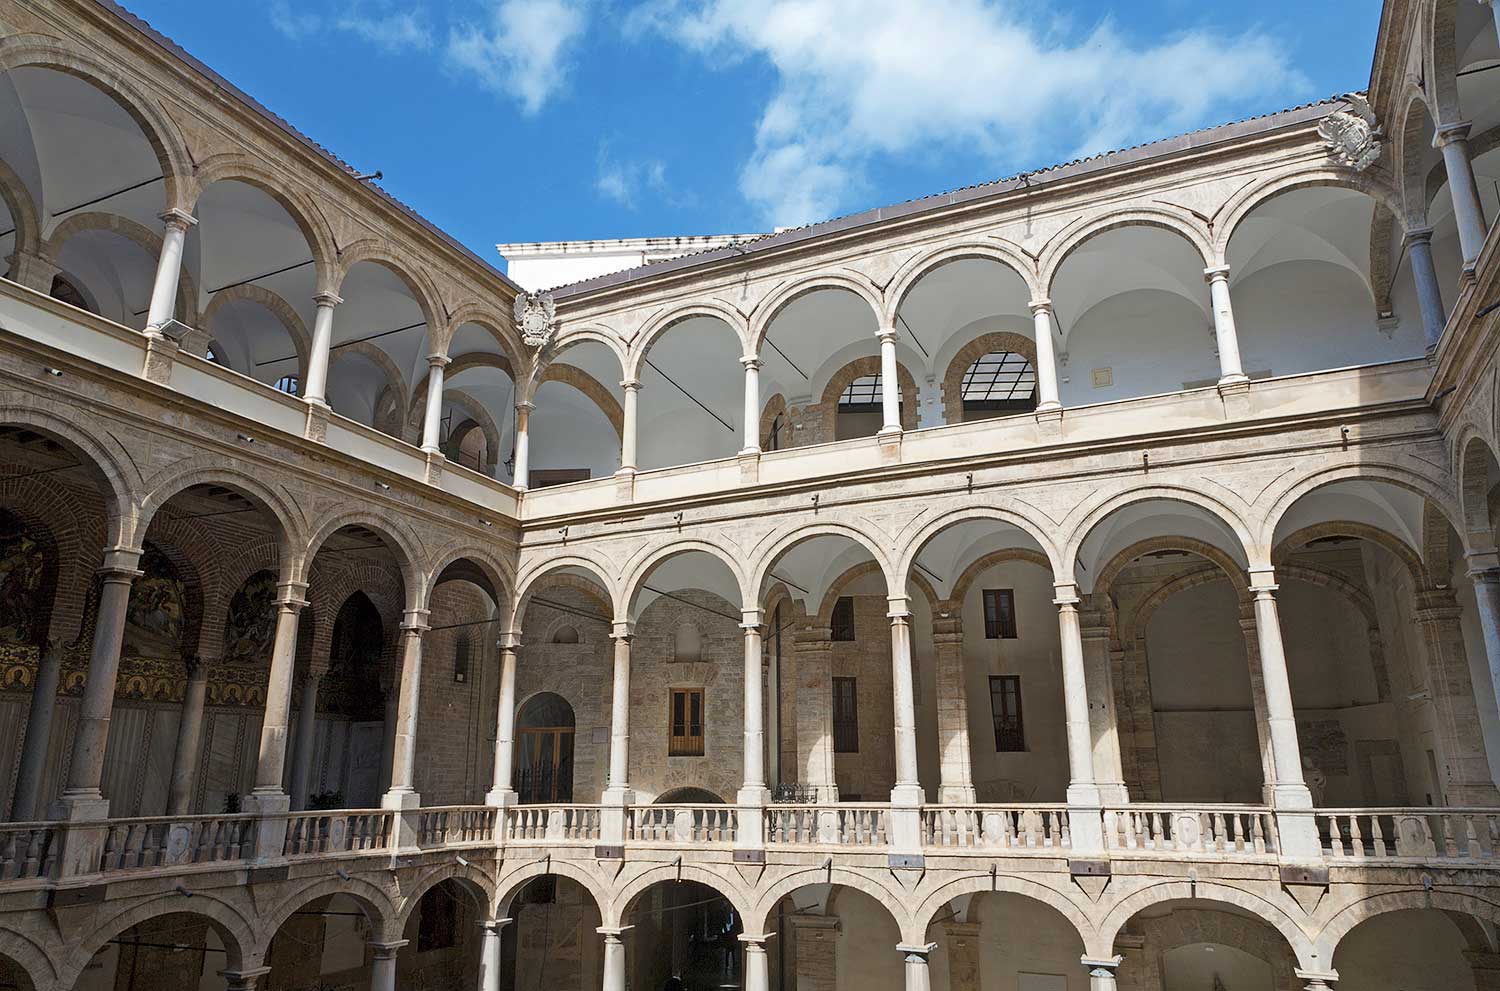 Het atrium van het Palazzo reale